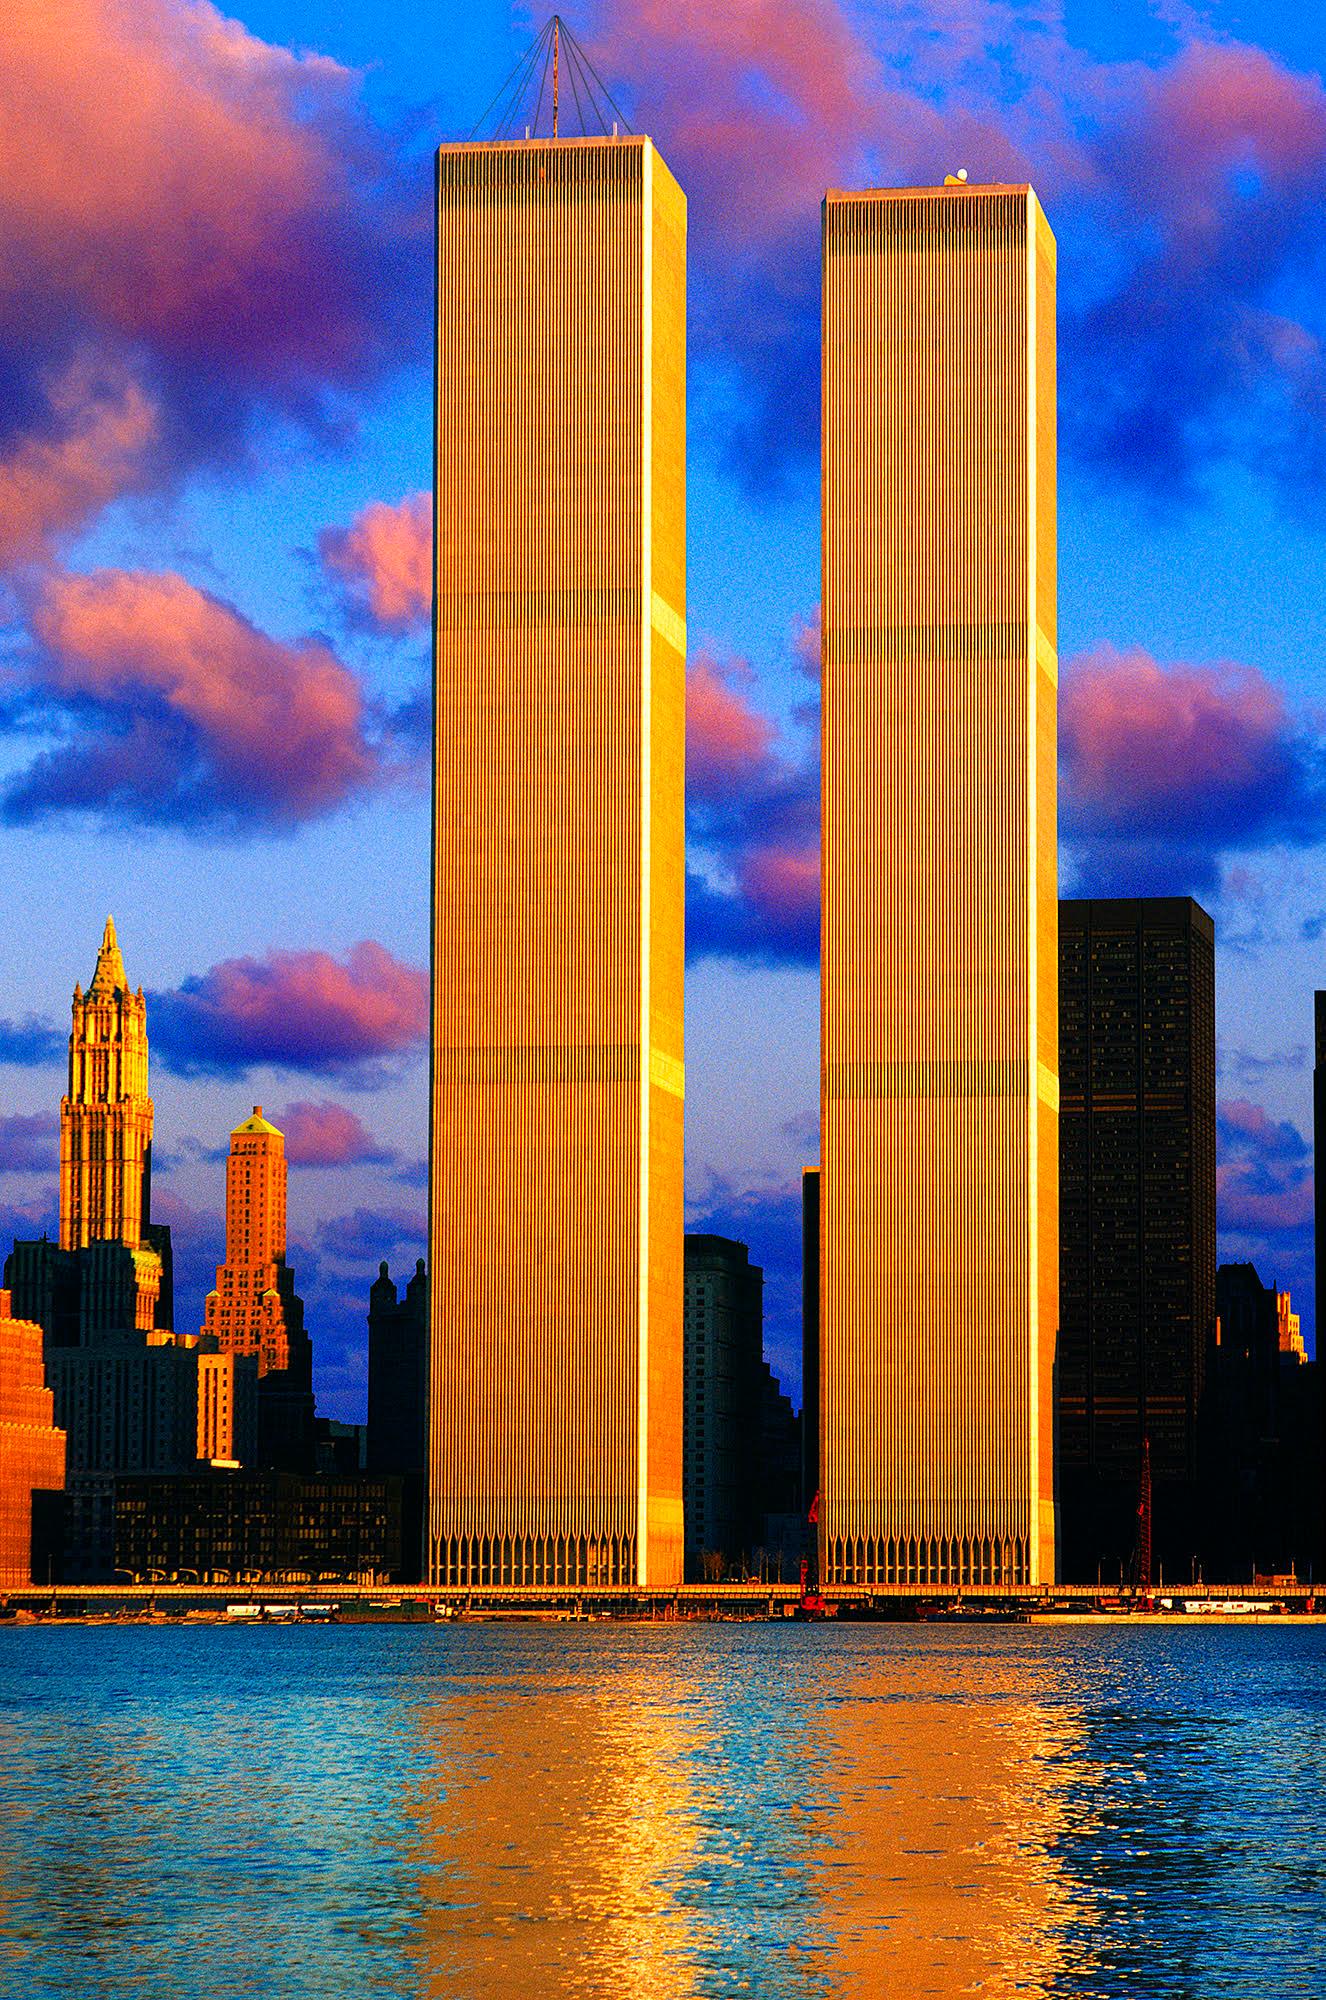 Abstract Photograph Mitchell Funk - 9/11 - Tours jumelles dans la lumière d'anges, architecture 